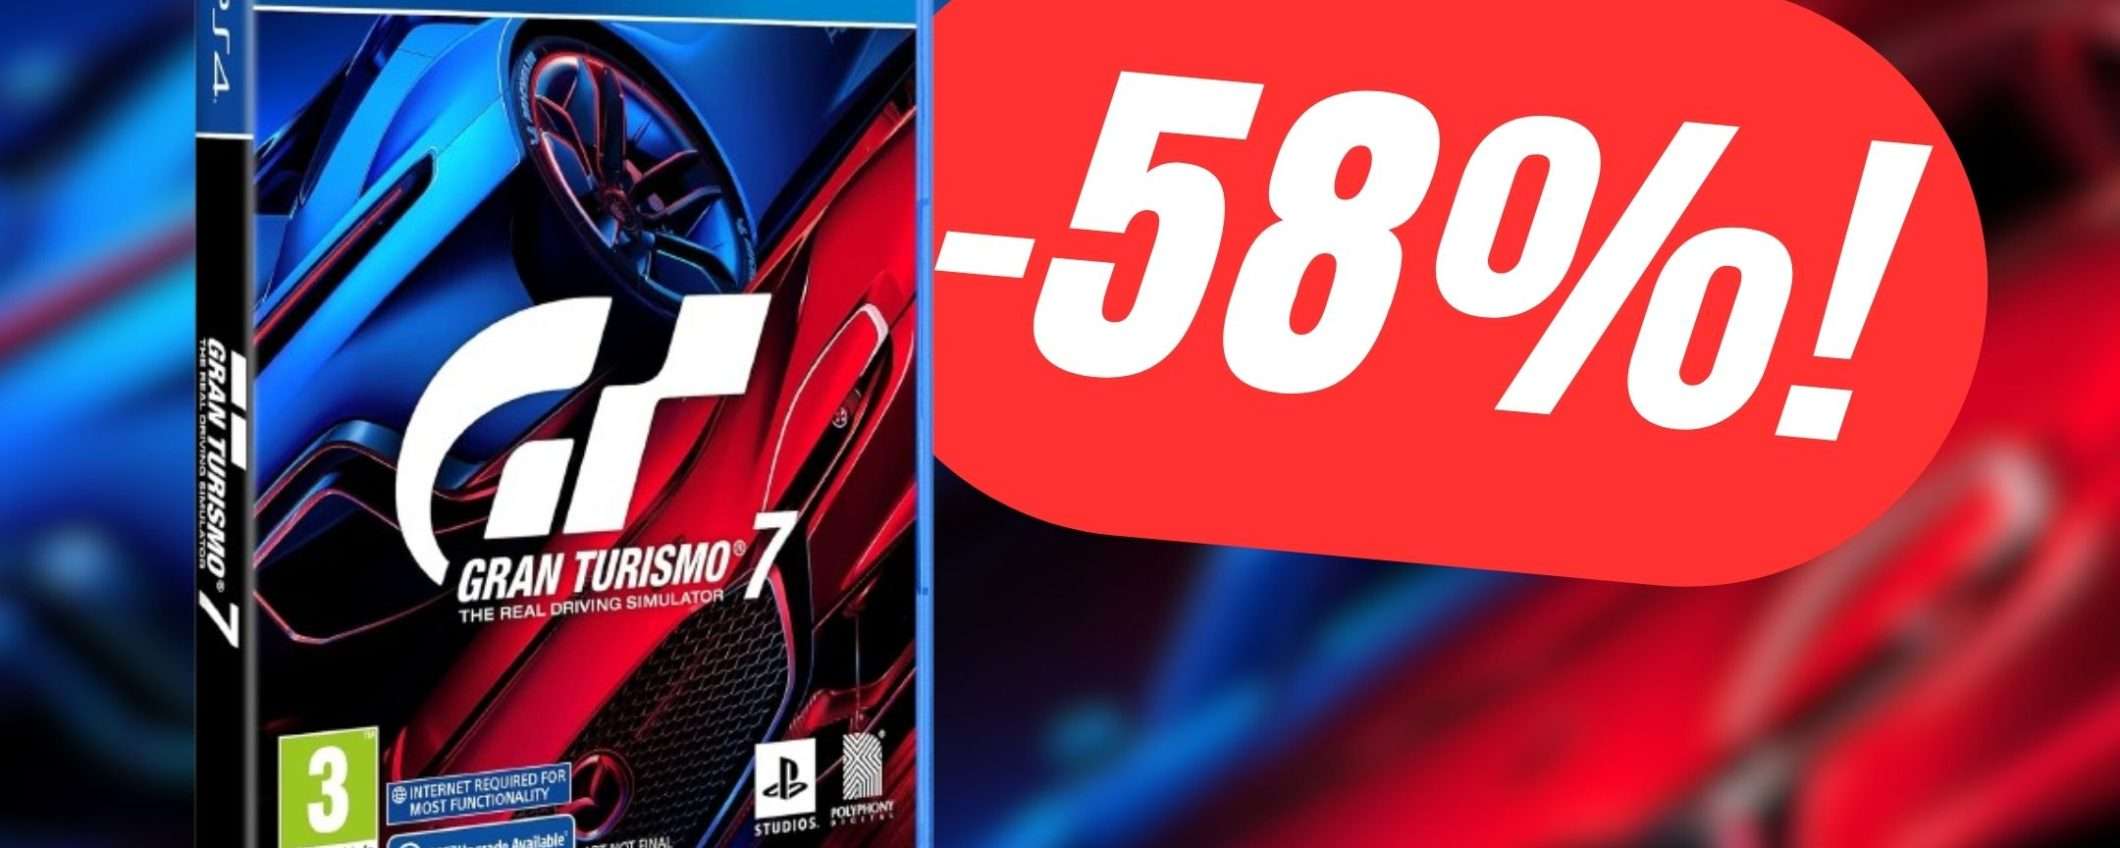 Gran Turismo 7 per PS4 CROLLA a meno di 30€ su Amazon!